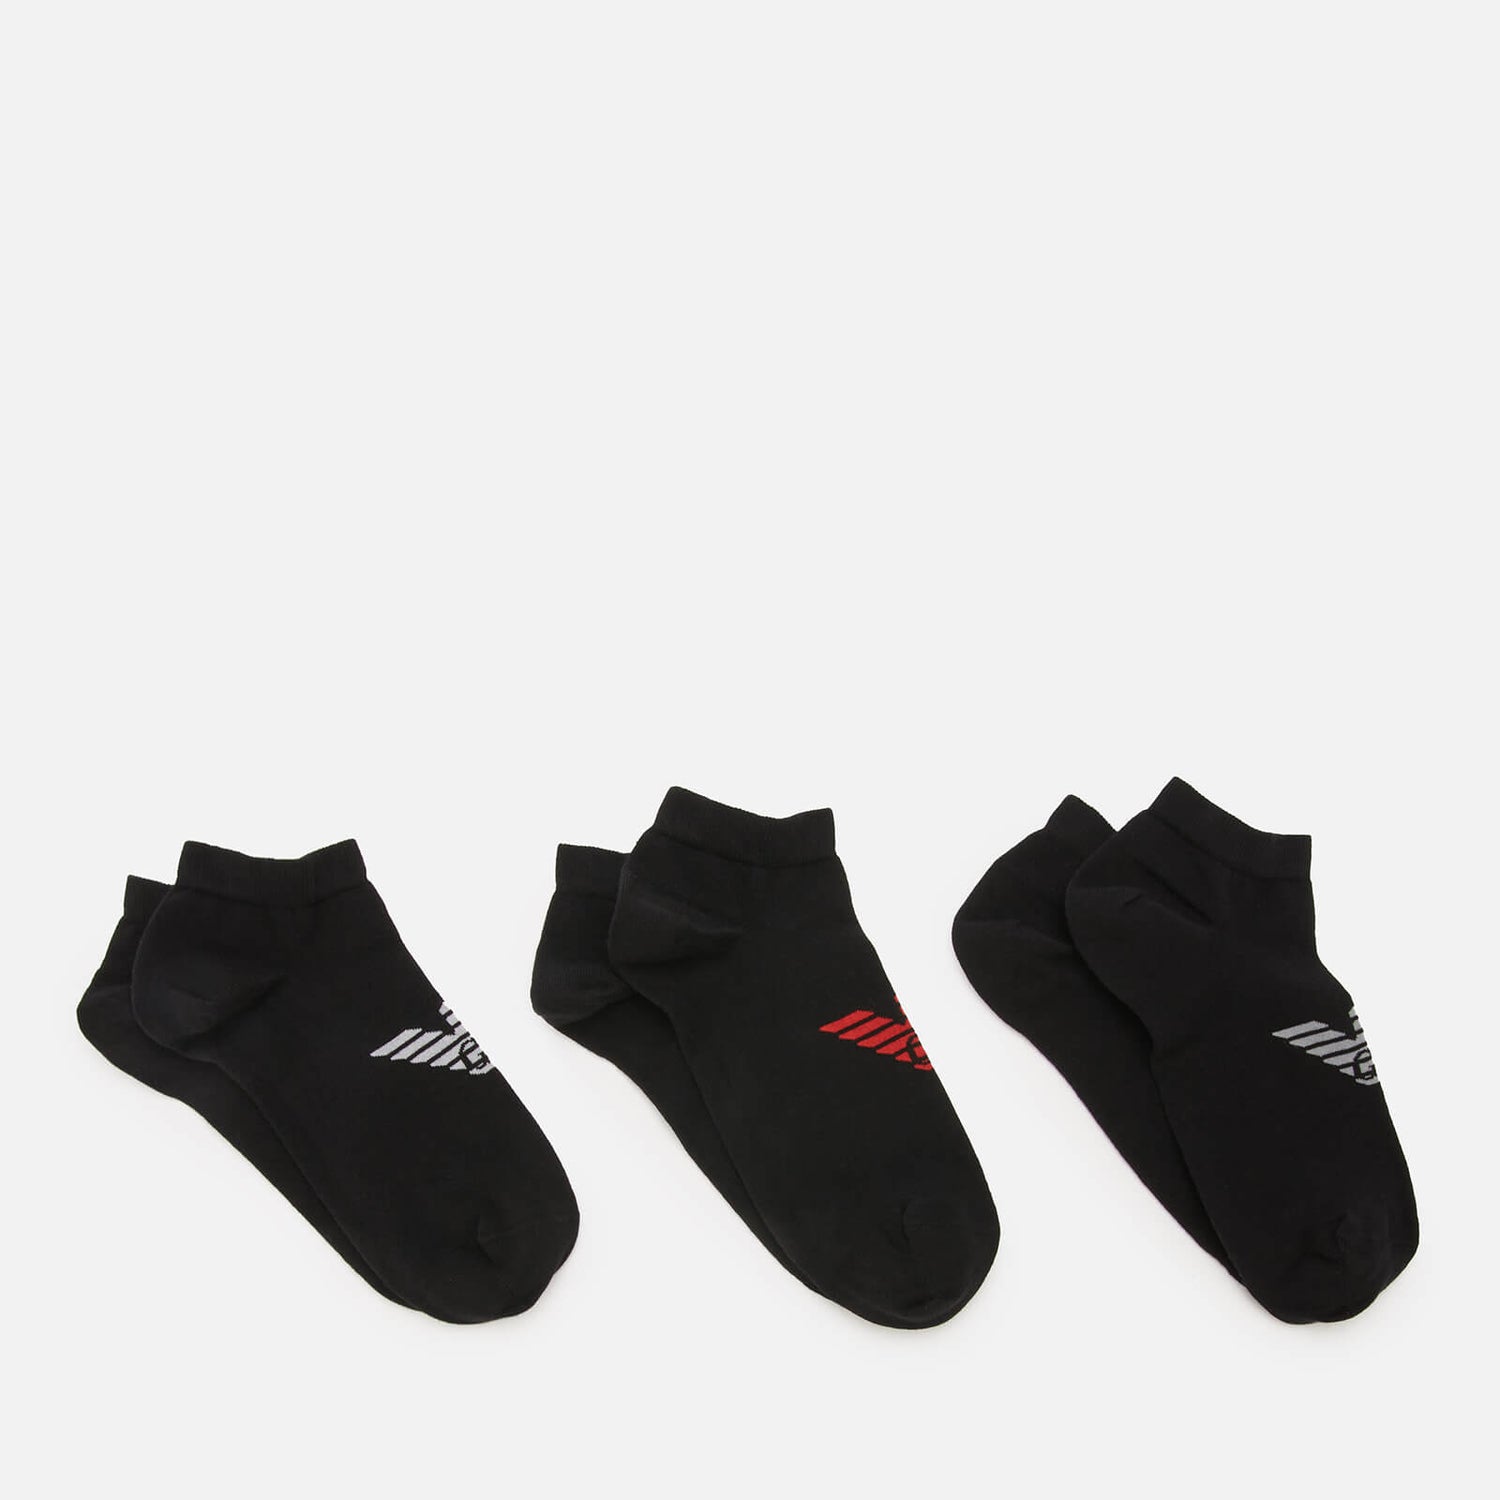 Emporio Armani Men's 3-Pack In Shoe Socks - Black - S